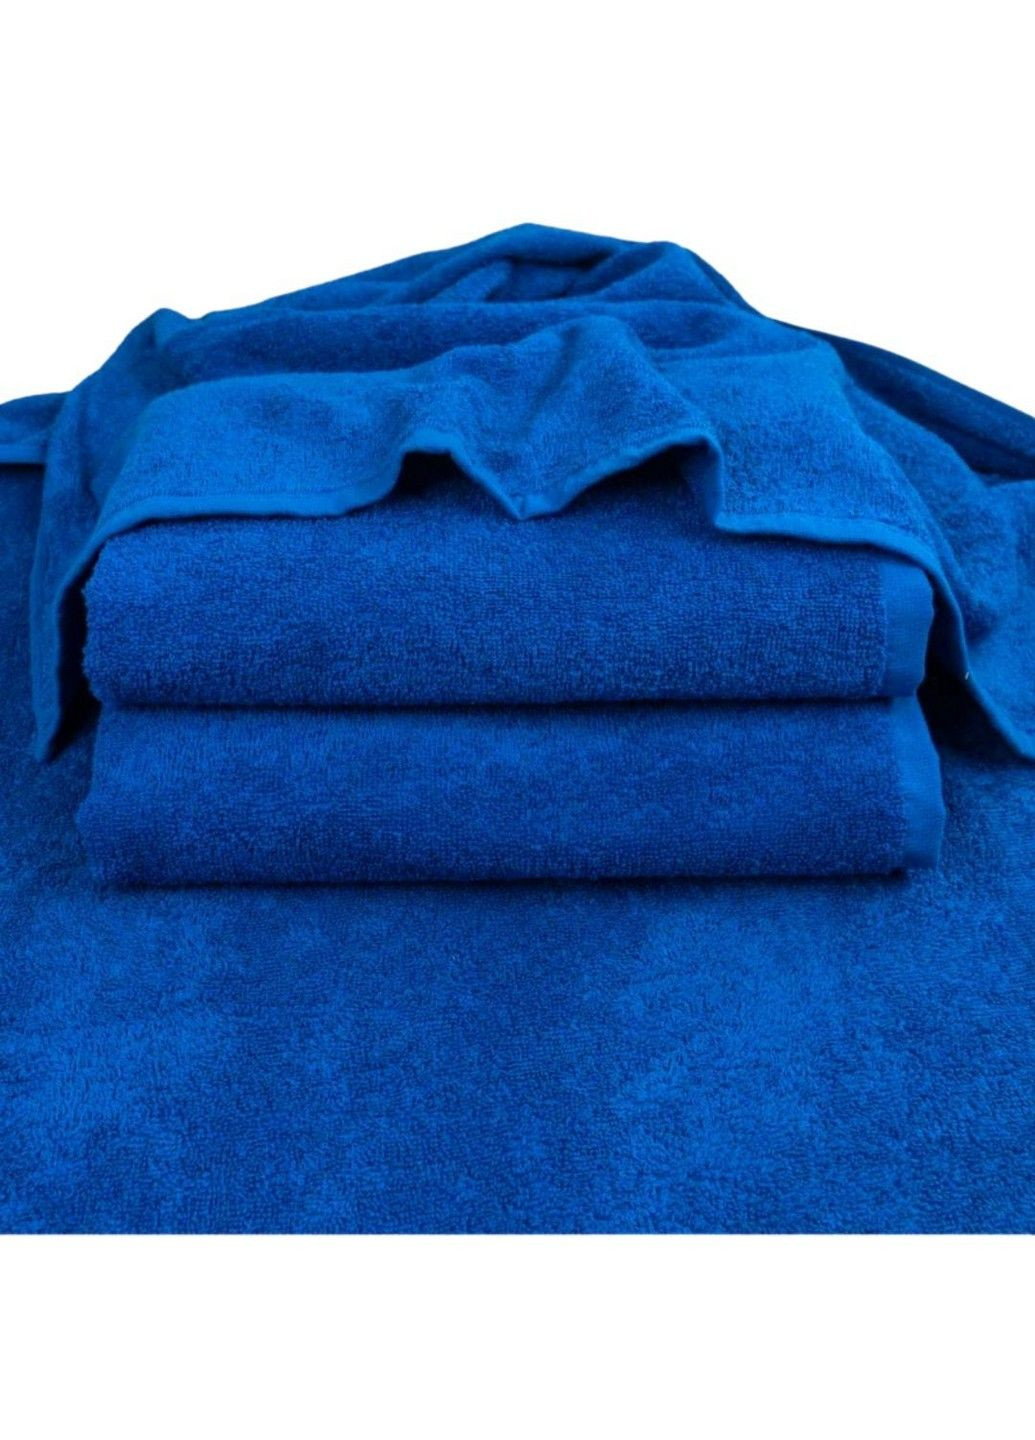 GM Textile полотенце махровое, 70*140 см синий производство - Узбекистан